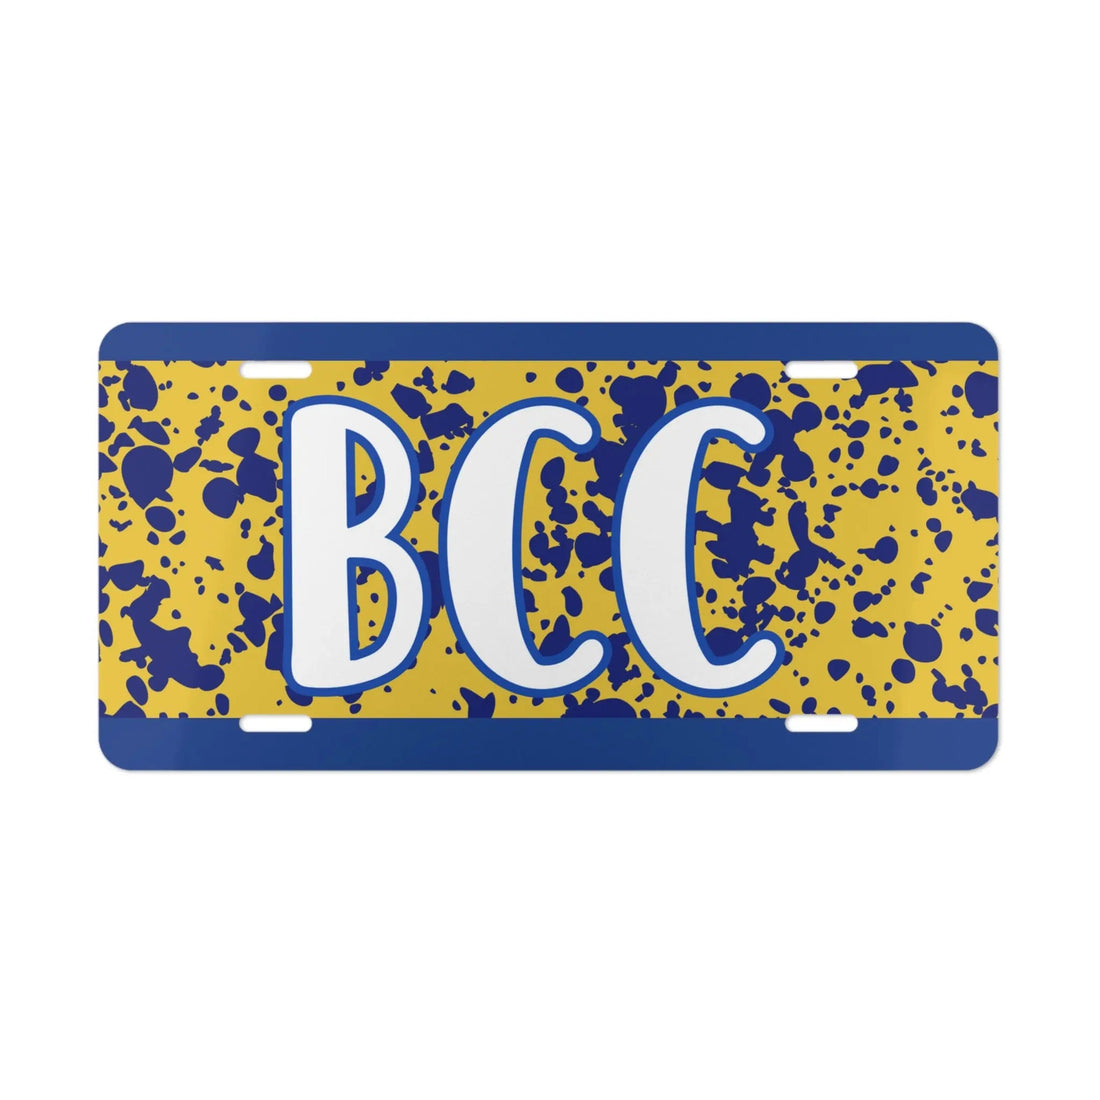 BCC Splatter Plate - Accessories - Positively Sassy - BCC Splatter Plate